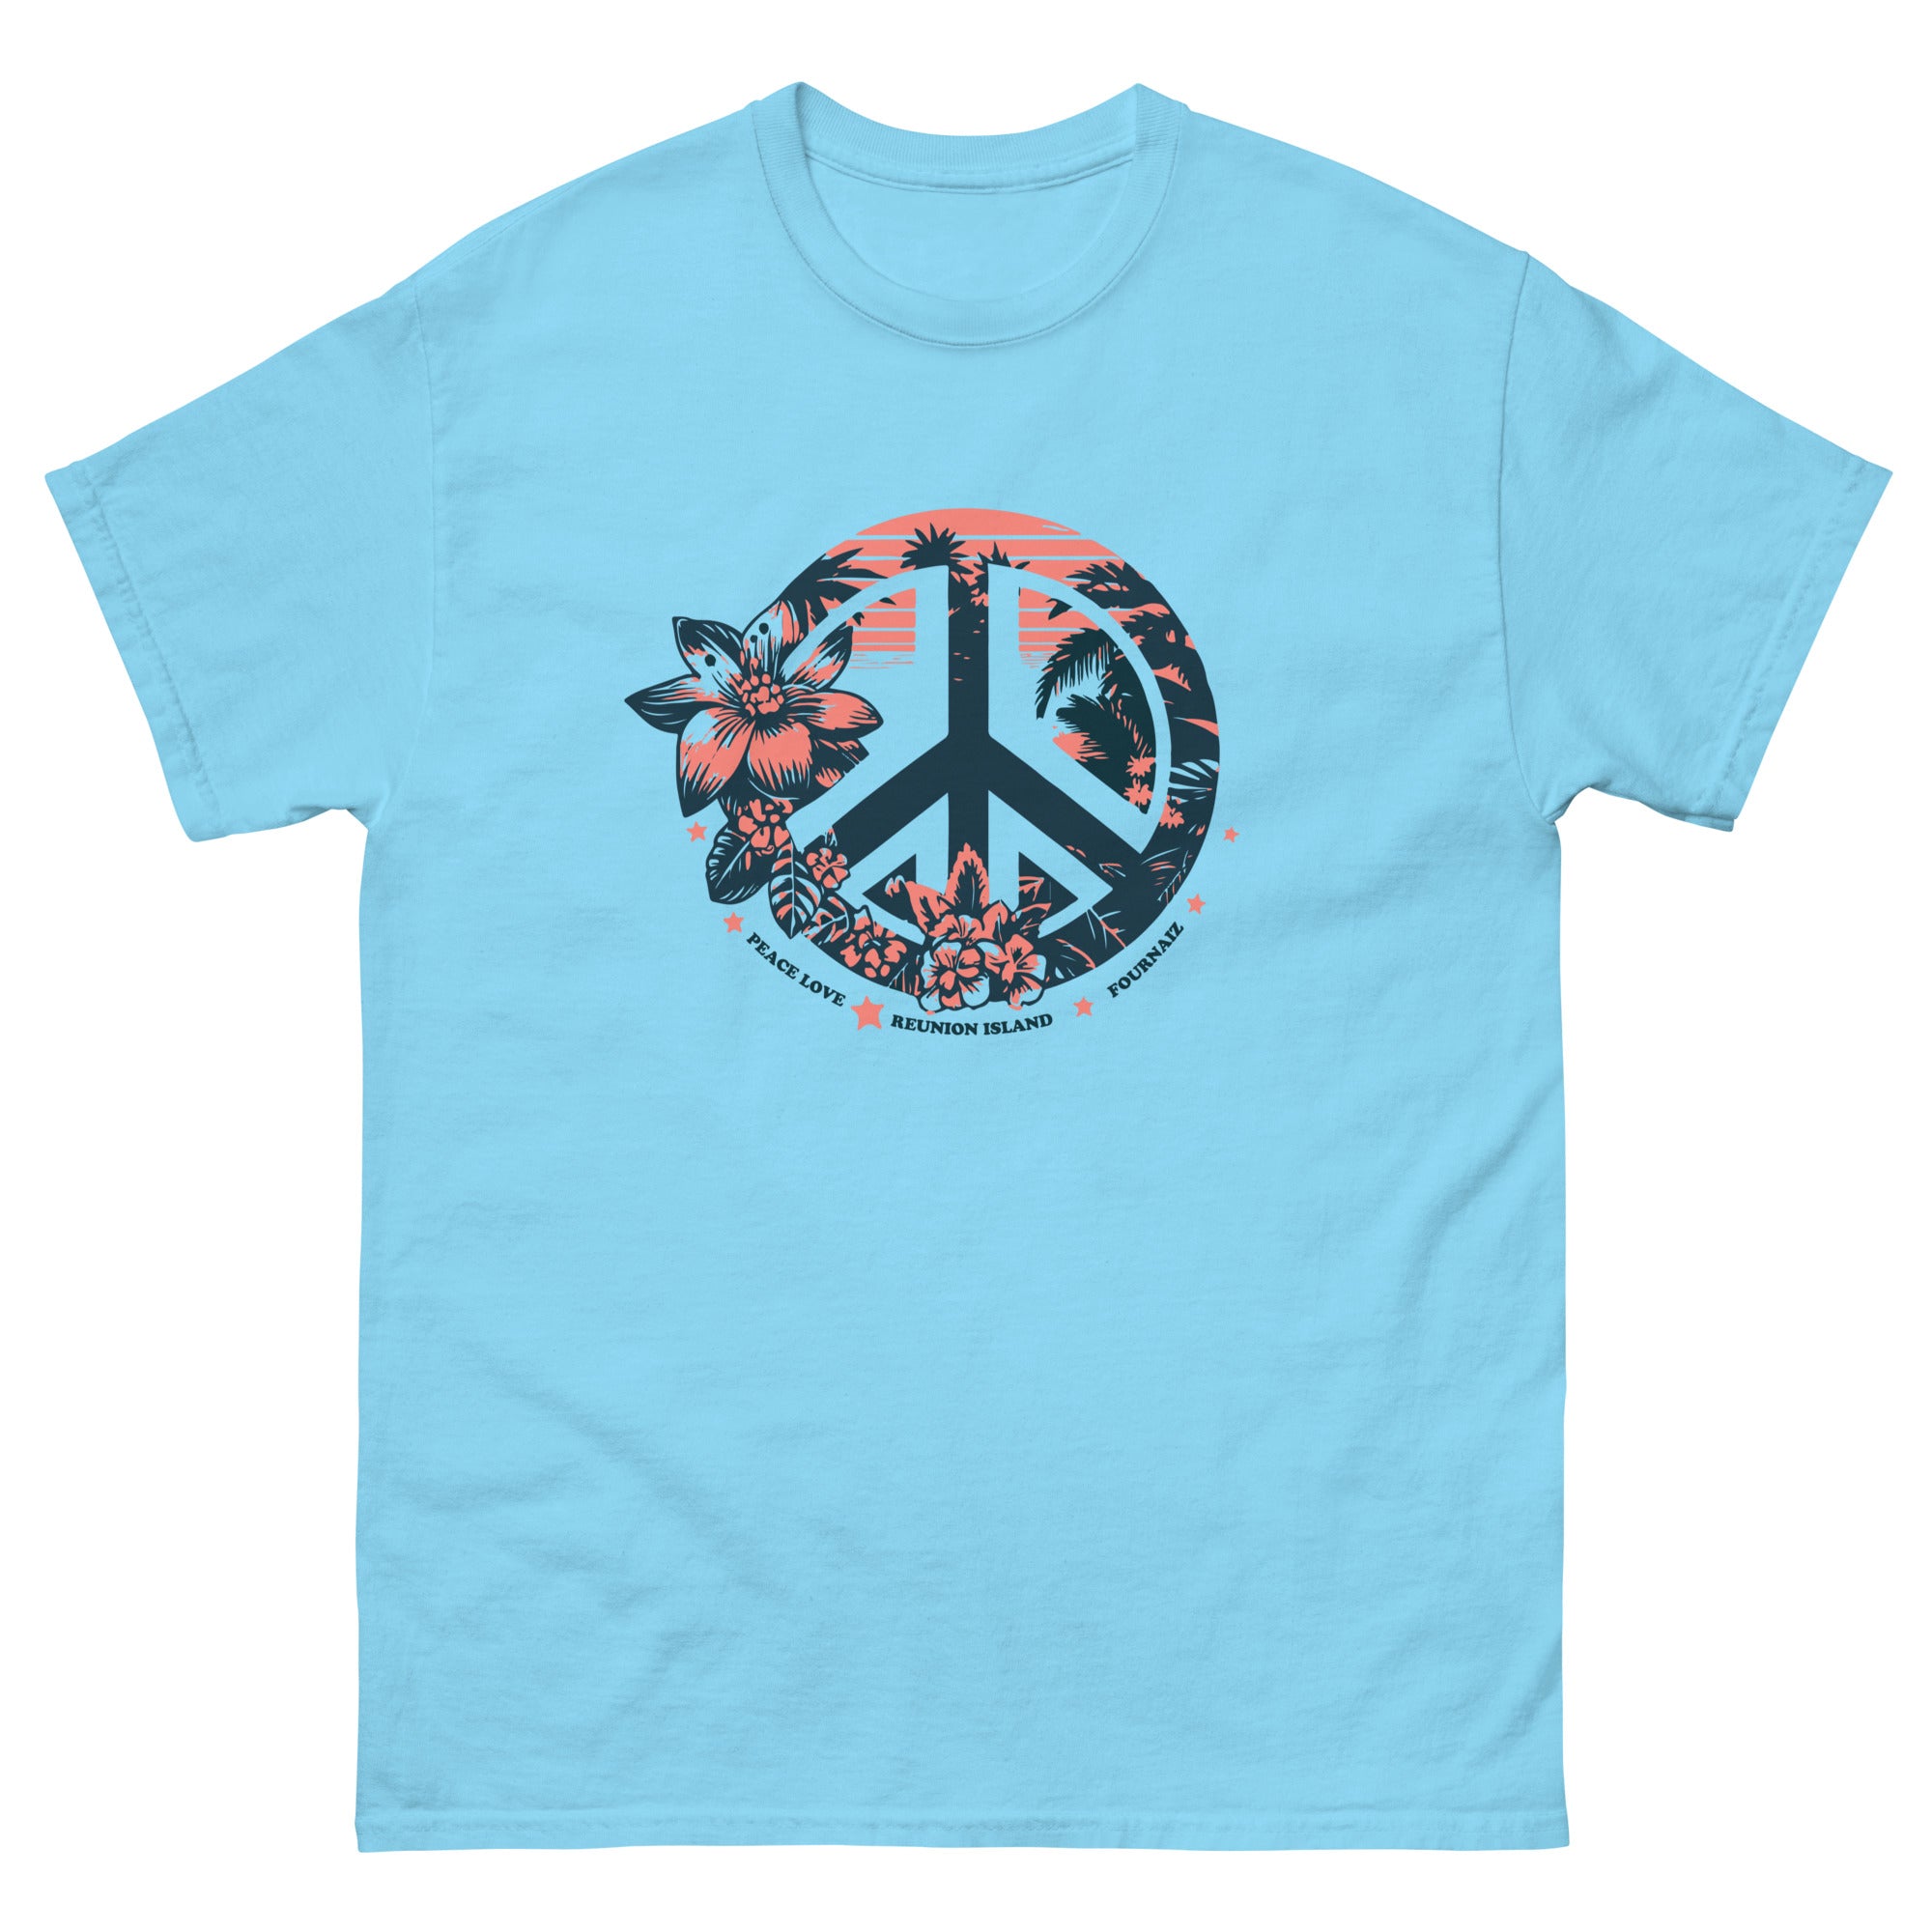 T-shirt Peace & Love Reunion Island (classique homme)